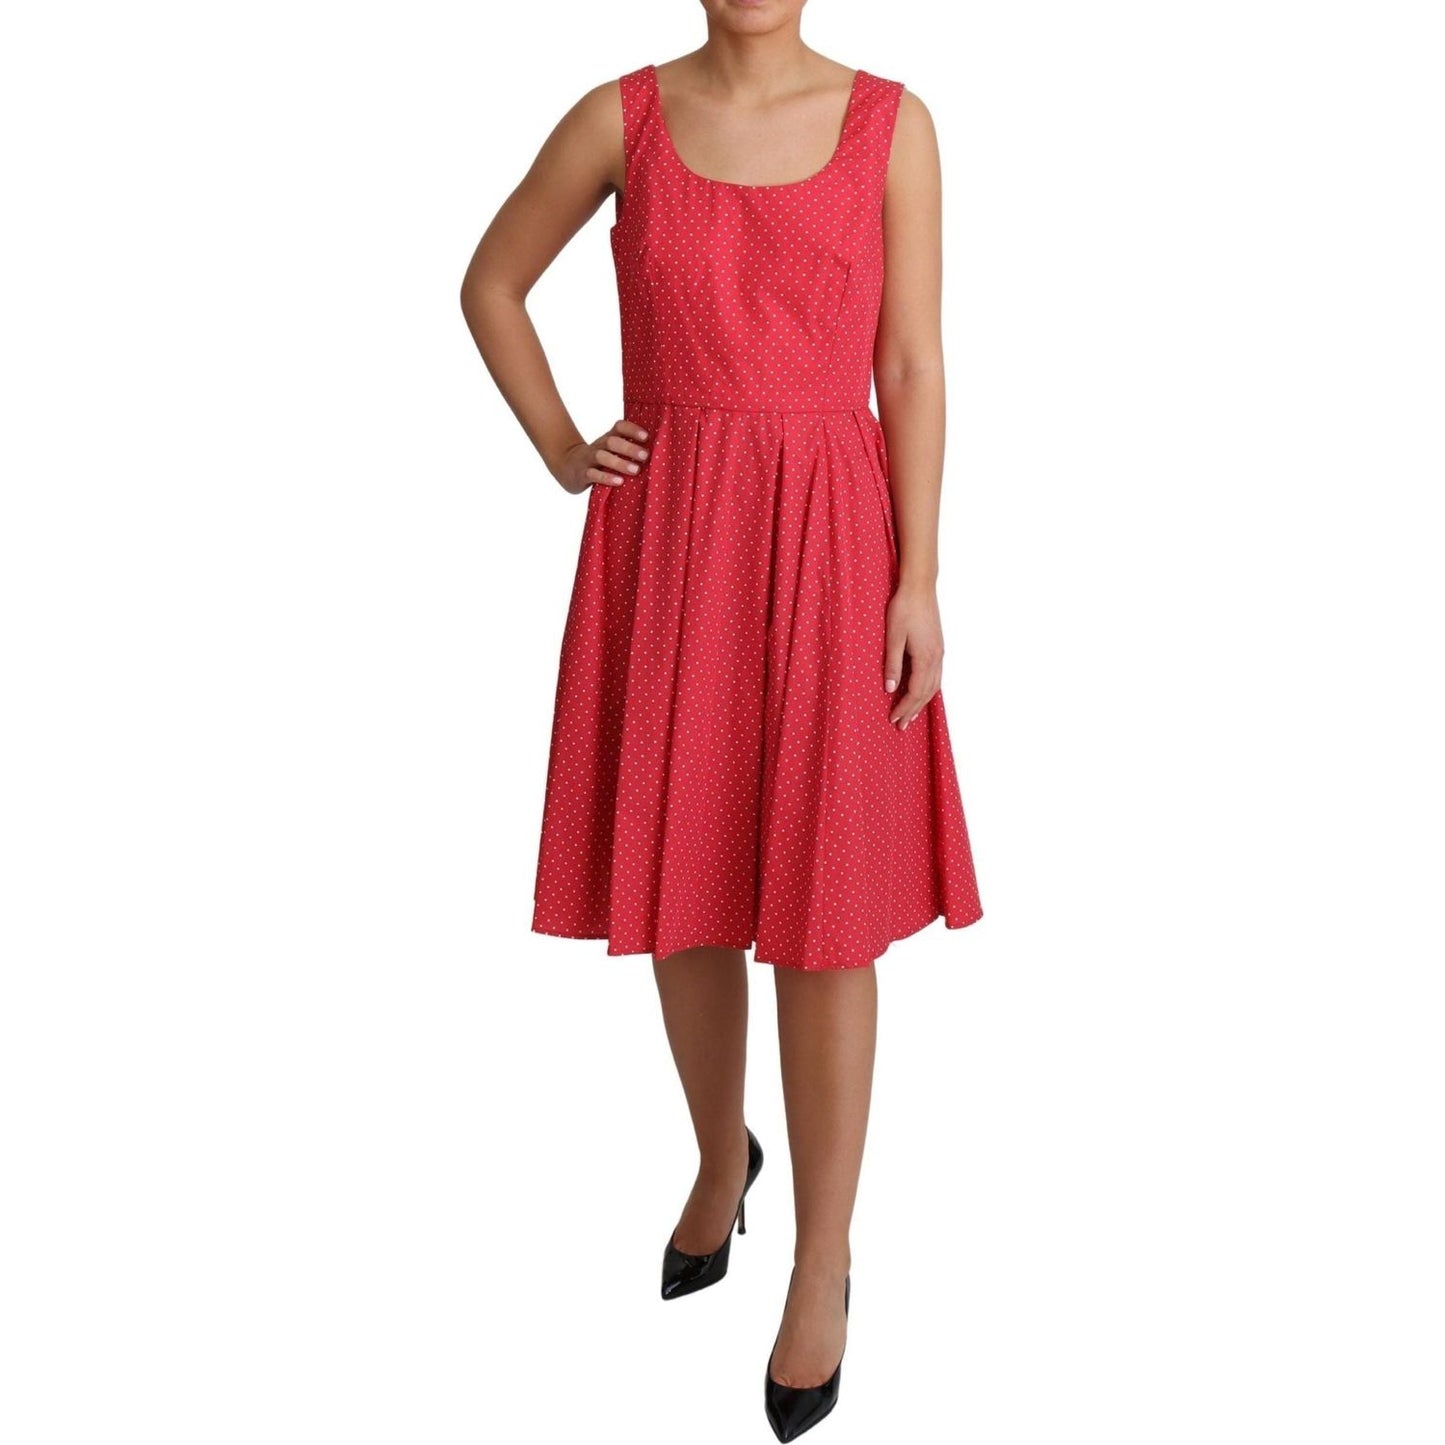 Dolce & Gabbana Polka-Dot Sleeveless A-Line Dress red-polka-dotted-cotton-a-line-dress